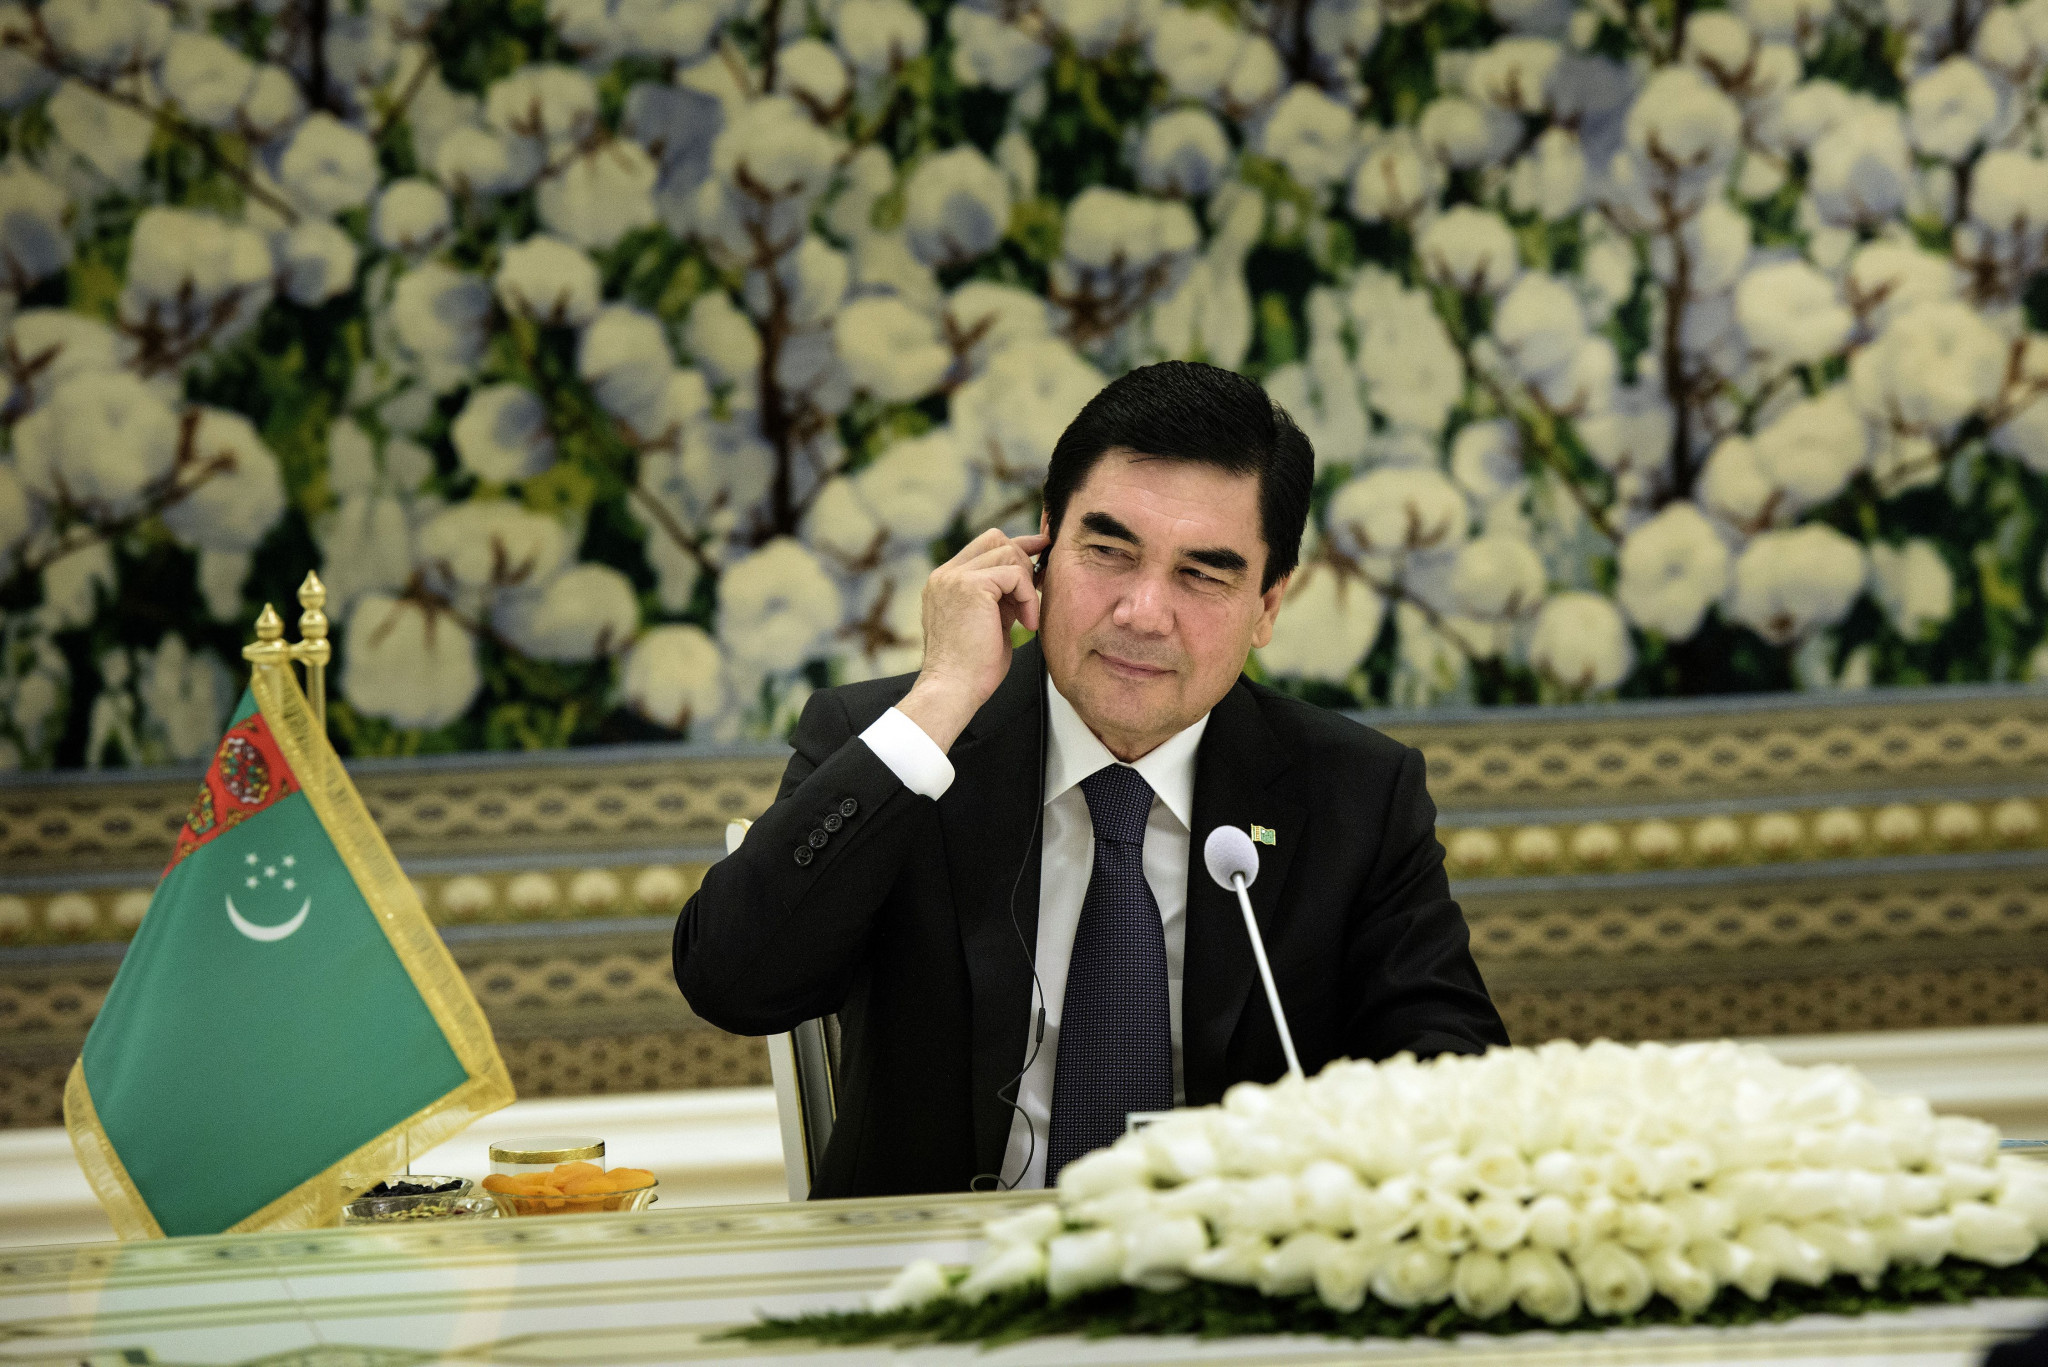 Gurbanguly Berdimuhamedov was awarded the UCI Order ©Getty Images